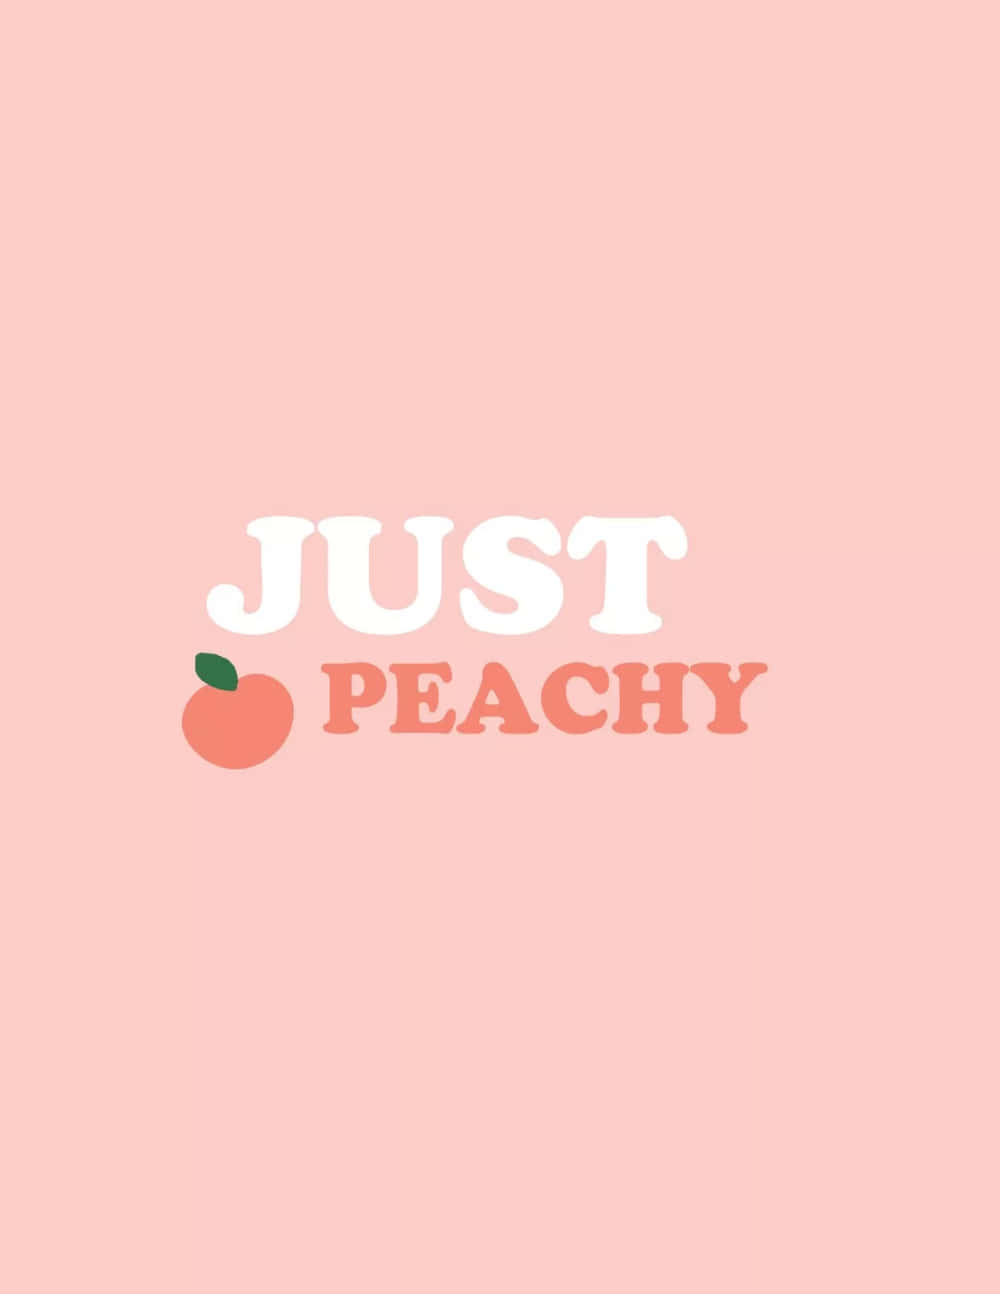 Cute Peach Word Just Peachy Wallpaper